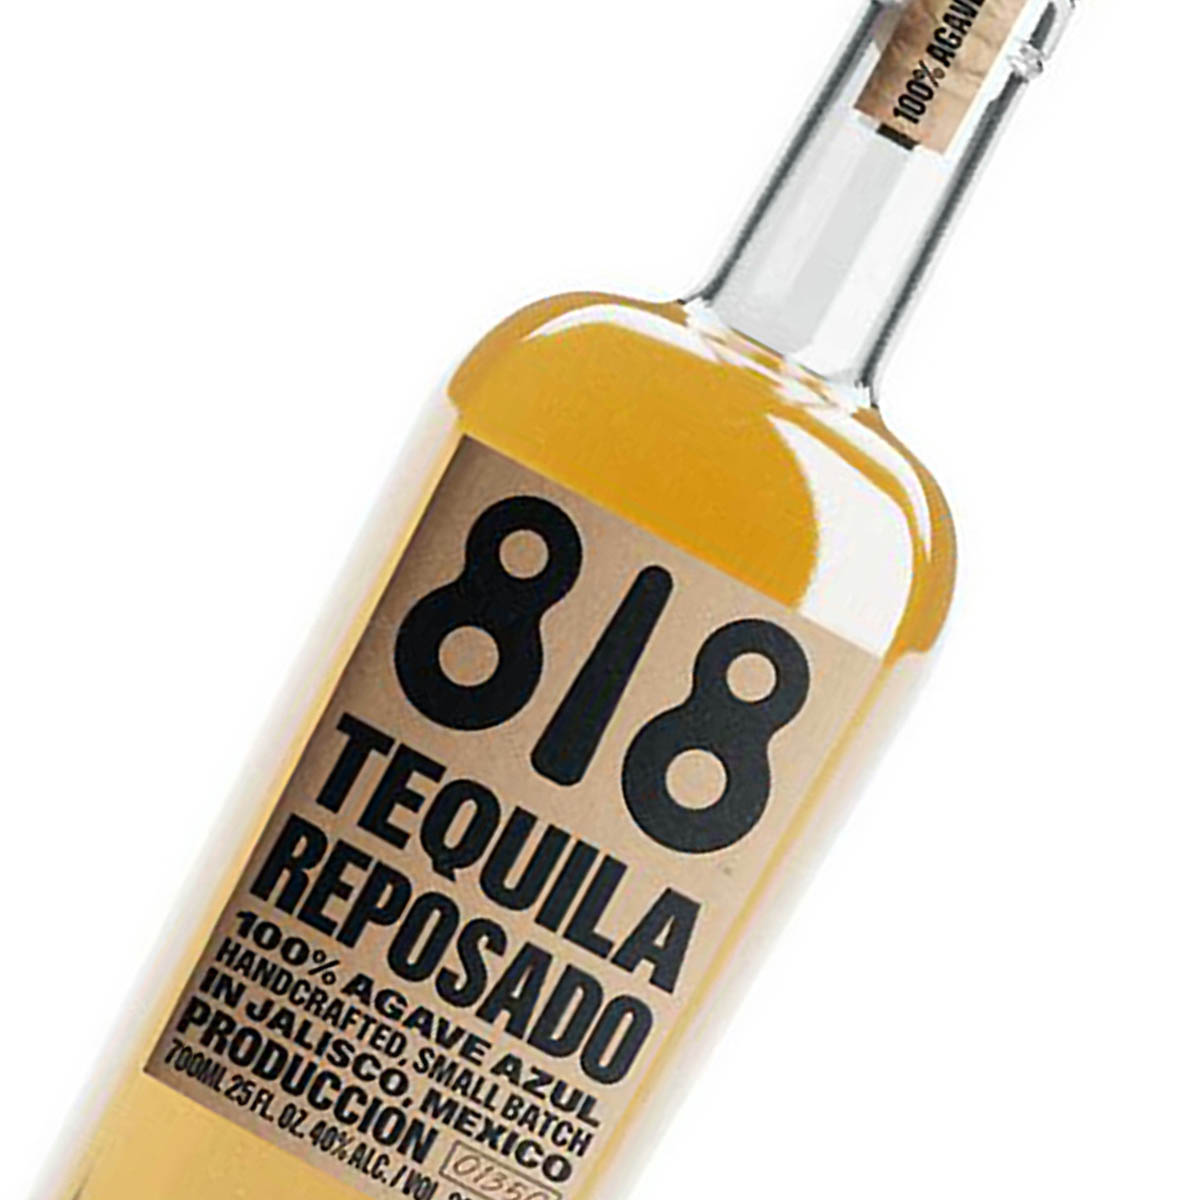 818 Текила. 818 Tequila product. 818 Tequila eight Reserve. 818 Tequila eight Reserve Photoshoot. Текила 818